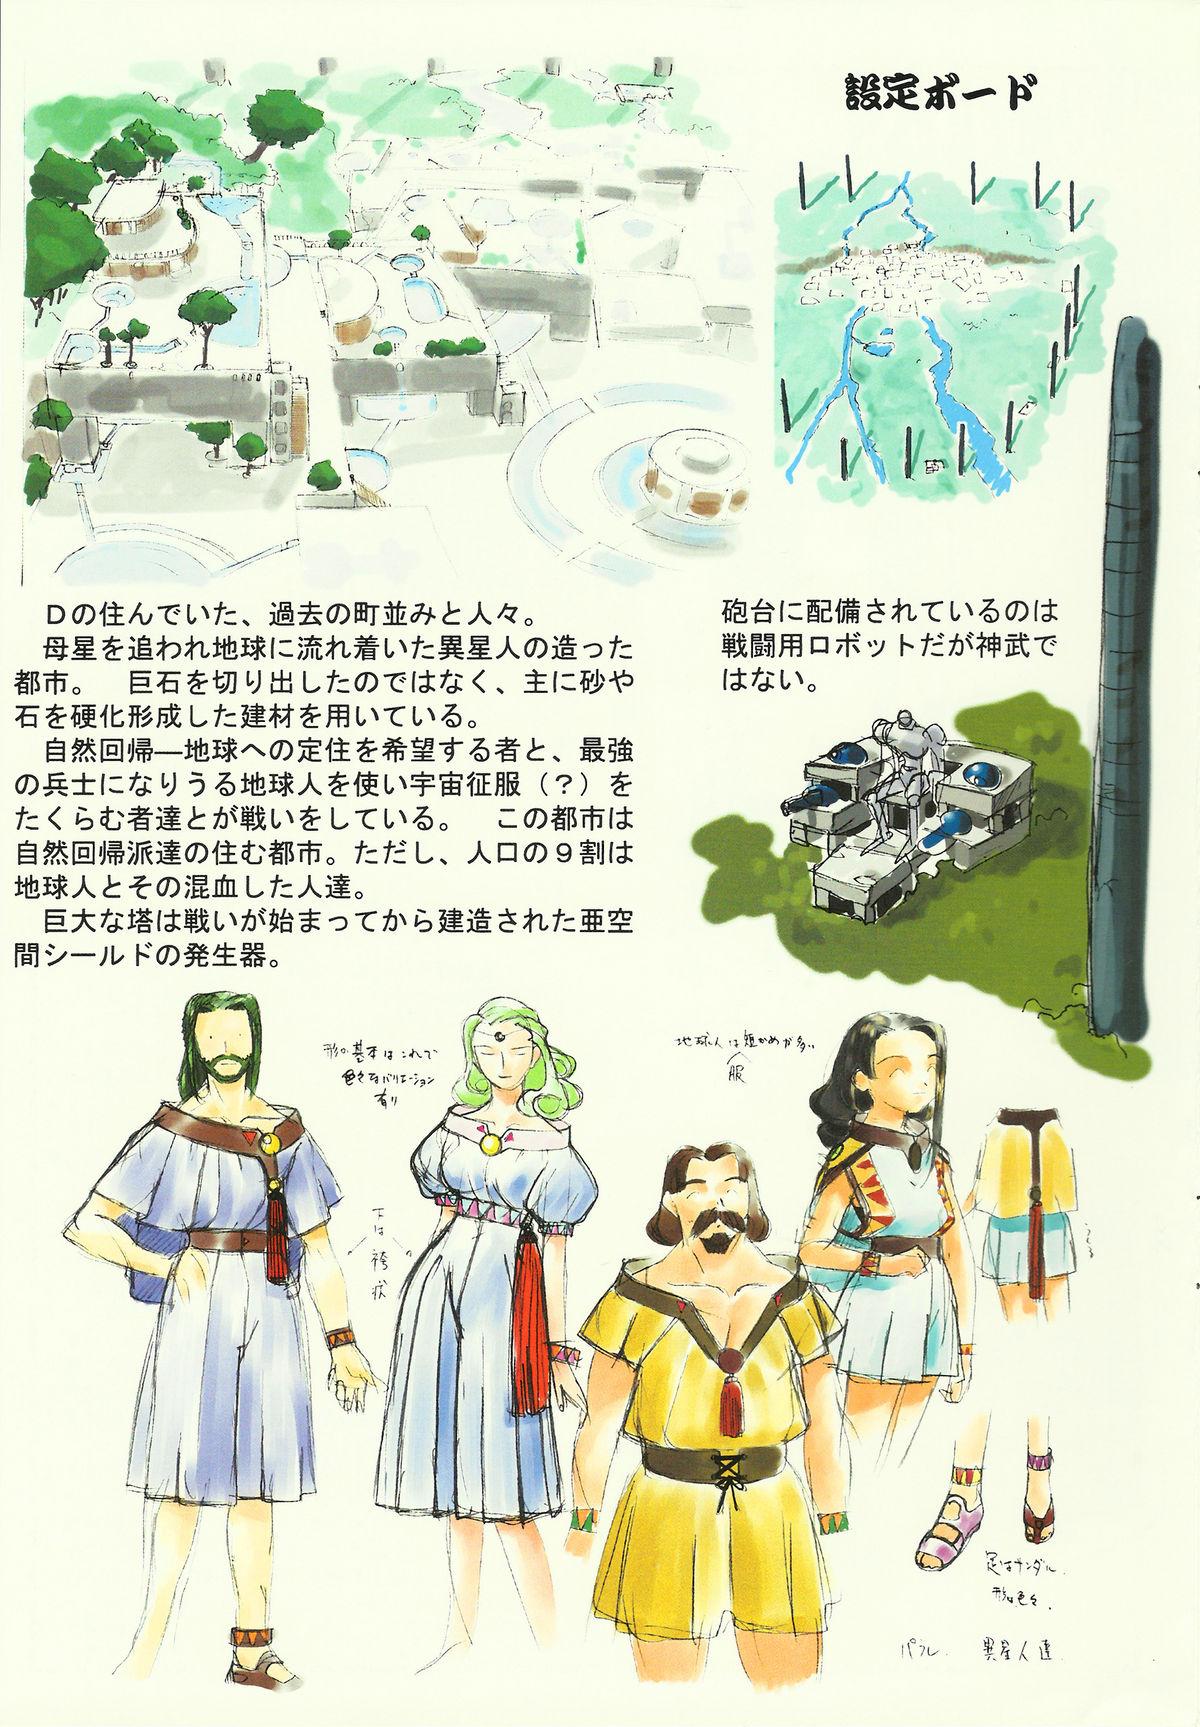 Passivo Omatsuri Zenjitsu no Yoru Heisei Ban 3 - Dual parallel trouble adventure Spaceship agga ruter Strip - Page 9